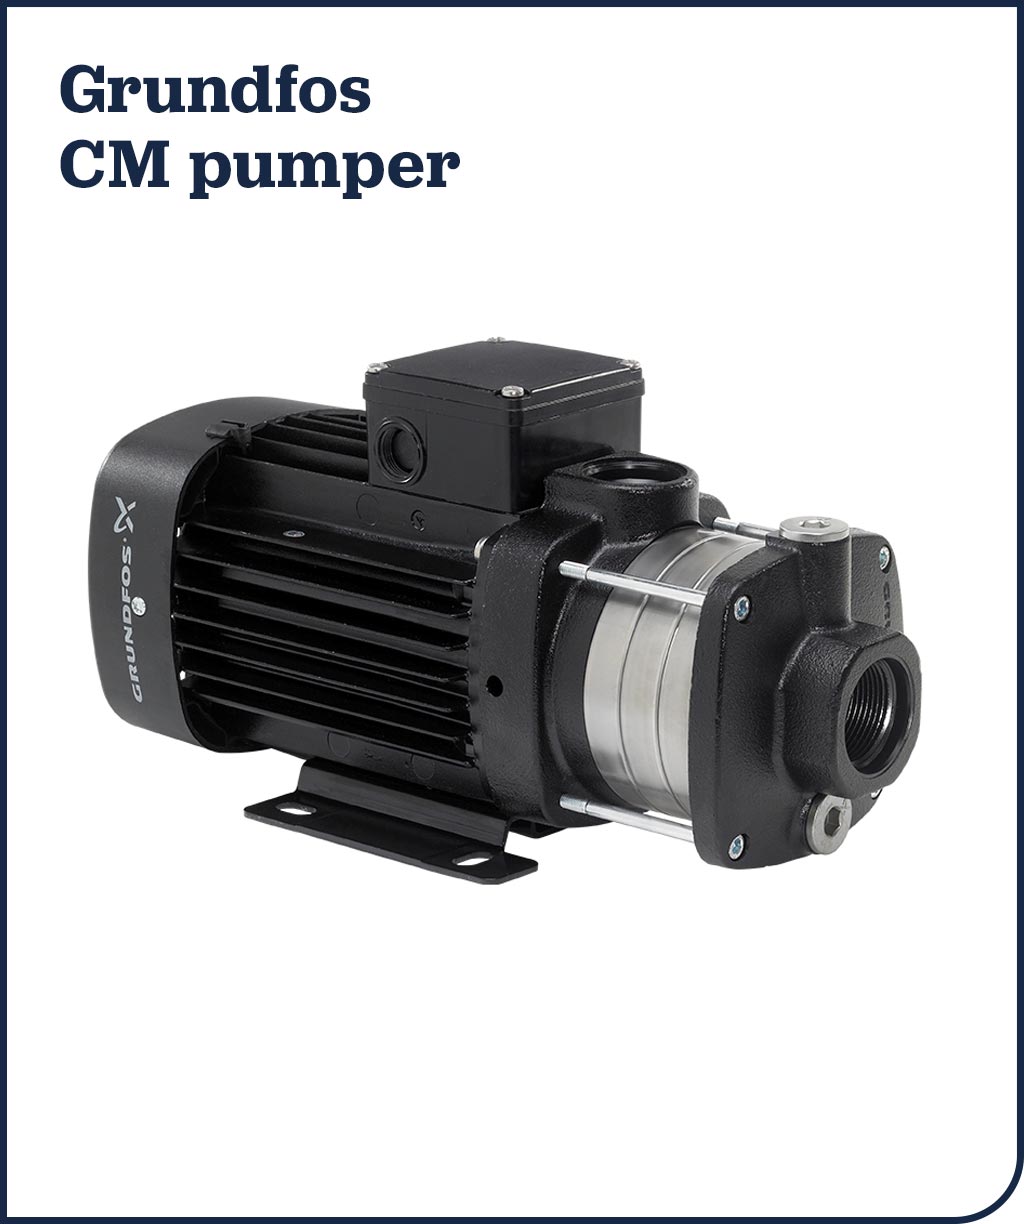 Grundfos CM pumper